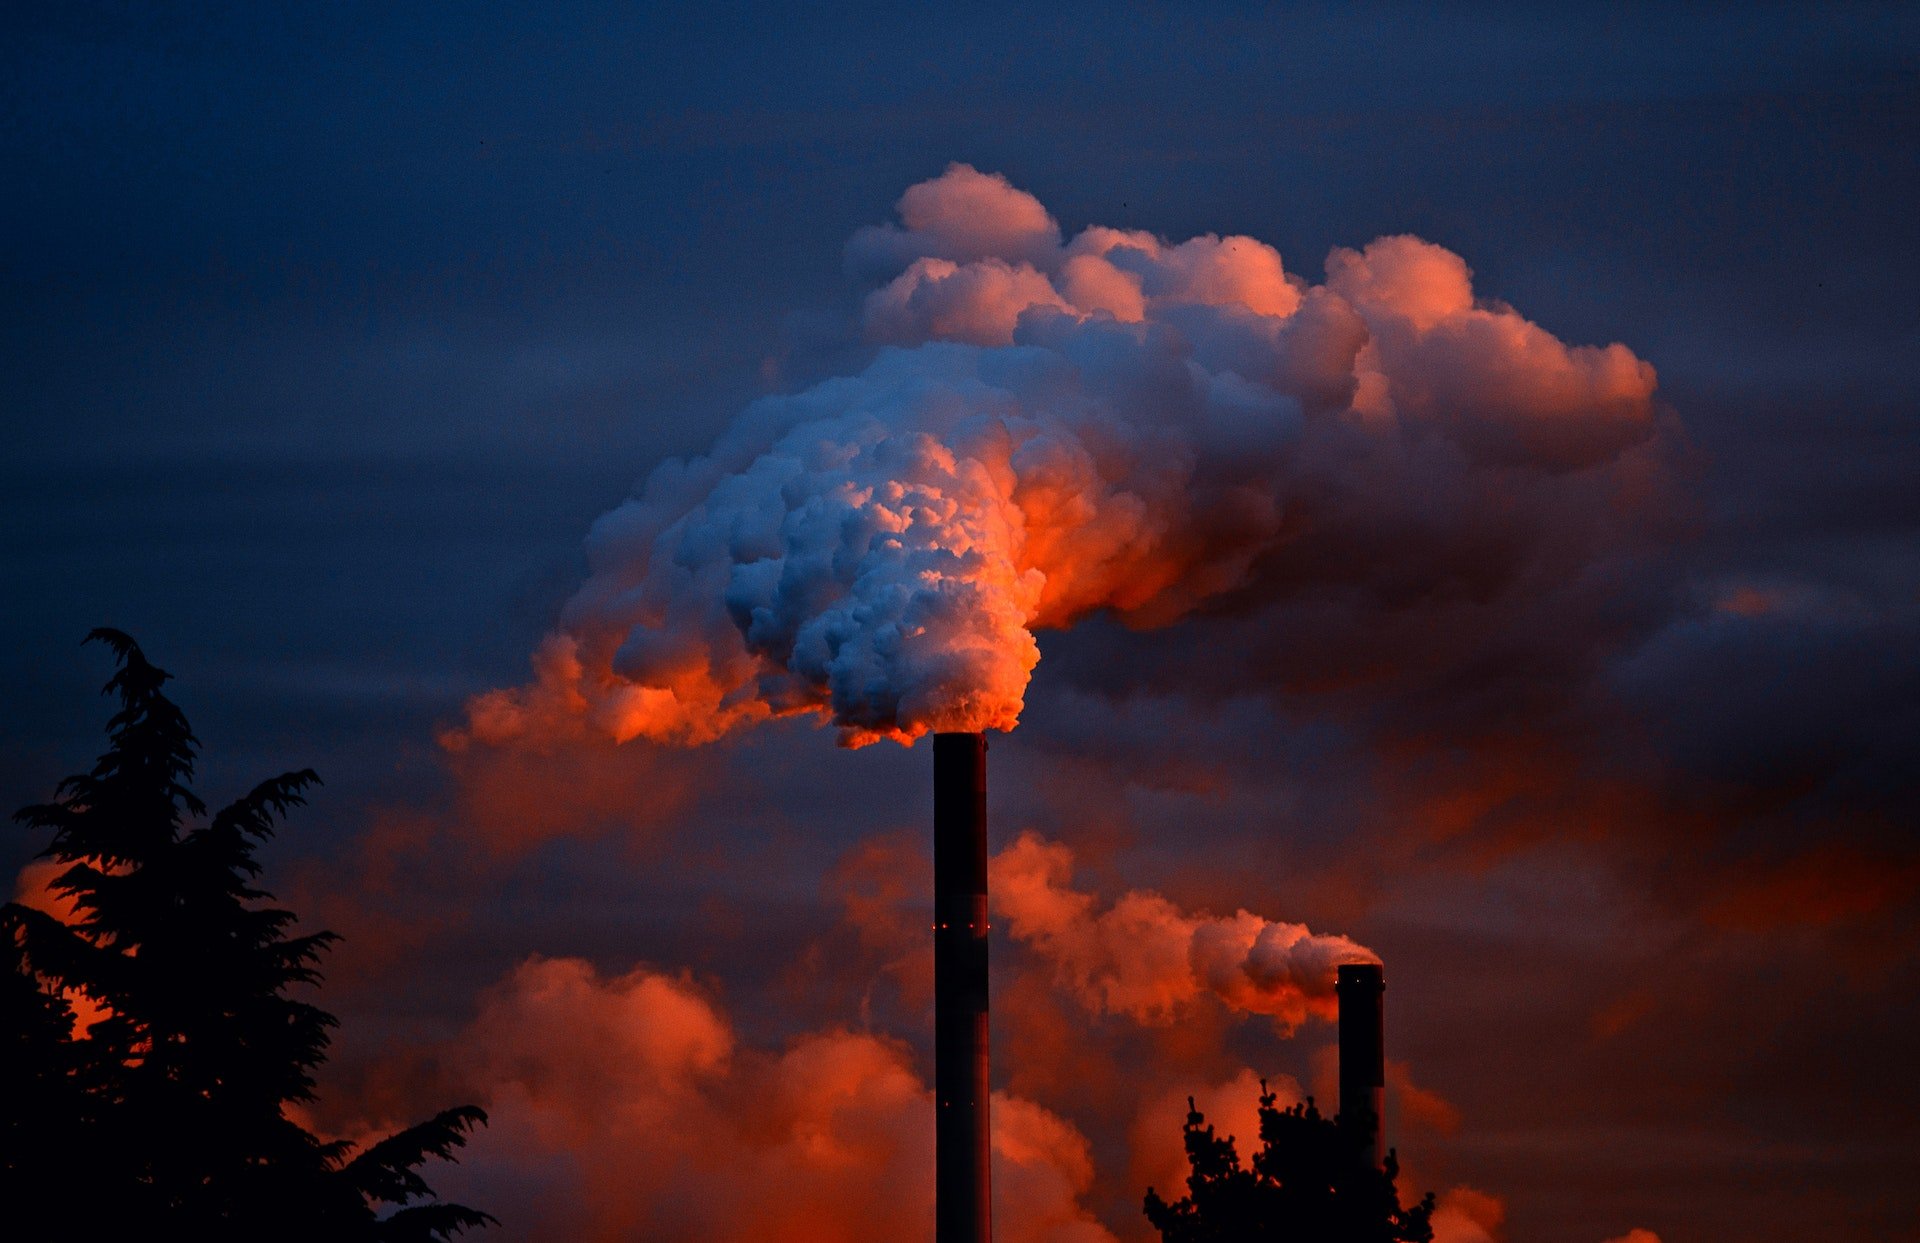 A poluição e o uso indiscriminado de recursos naturais estão causando a sexta extinção em massa. (Fonte: Pixabay)